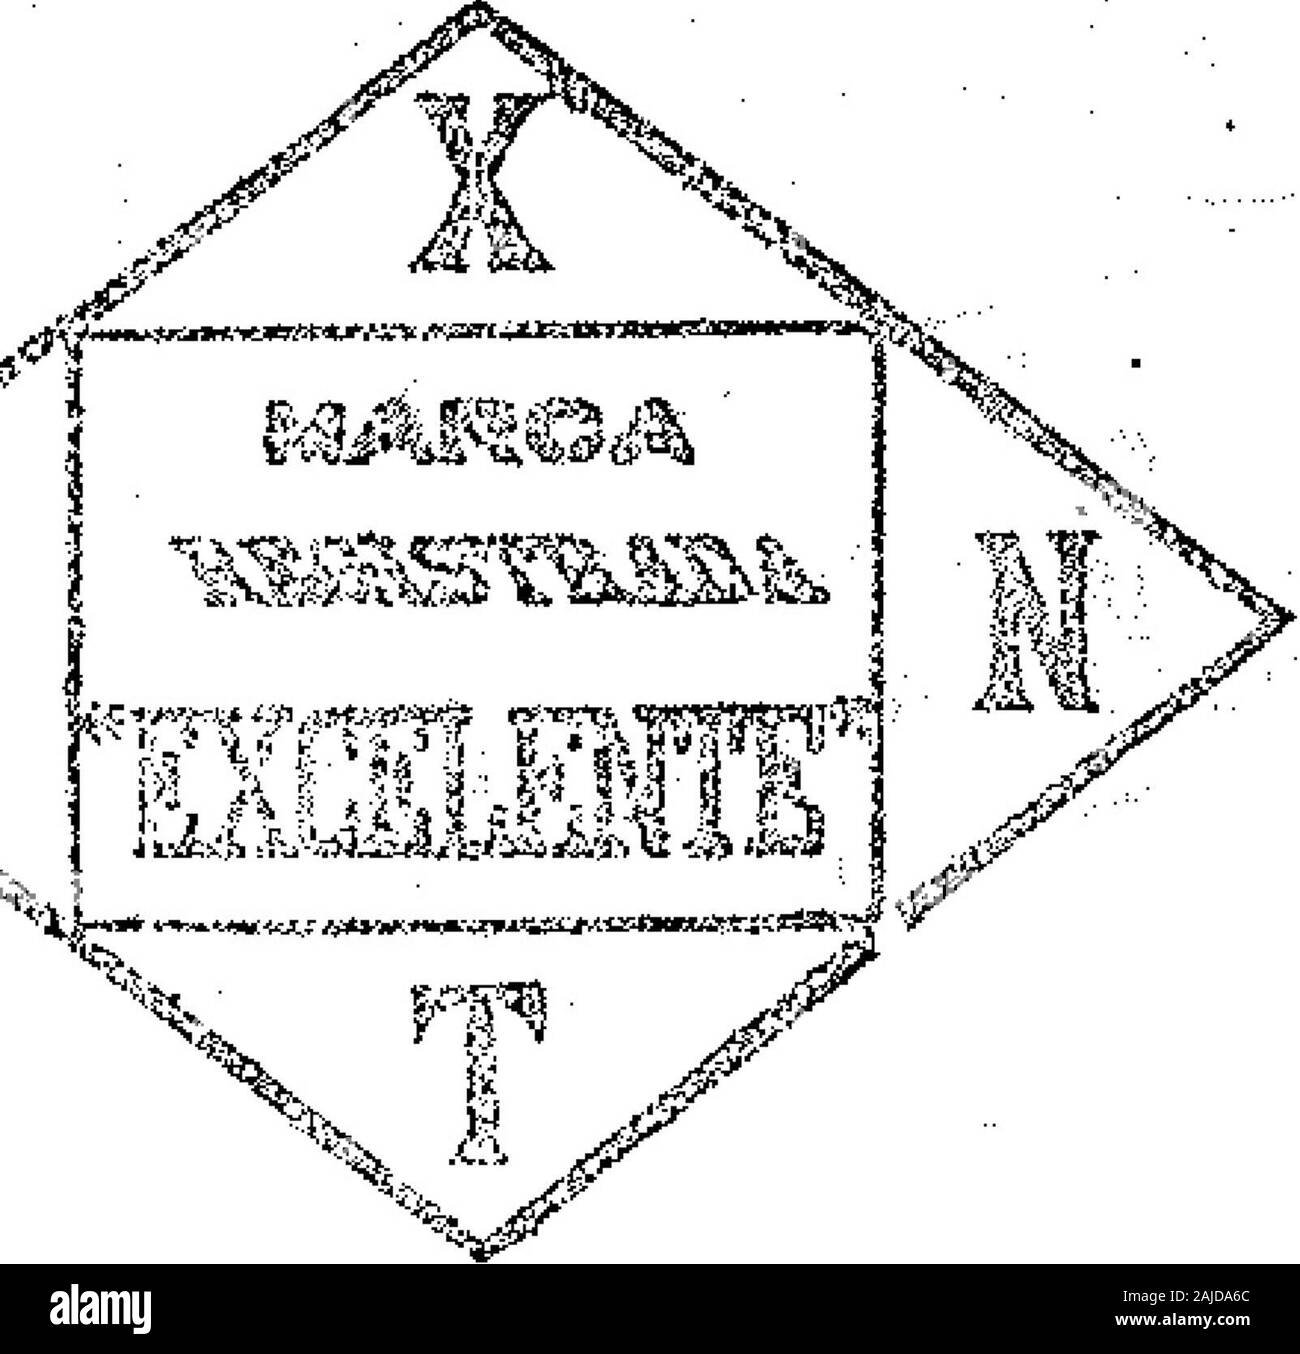 Boletín Oficial de la República Argentina 1912 1ra sección . — Stattdt y Co. -Telas y tejidos en general, tejidos de punto, mantelería ¡y lencería de la cíase 15, (modificada), v-3 octubre. ^^K^^^^^^^^^^^^^^^^^^^^^^^^^^^^^^^^^^^^^^^^K^^^^^K^^^9K^k 634; BOLETÍN; OFICIAL — Buenos Aires, Manes&gt;--f° de Octubre; de 1912 ^Aeta N°- 37a878^. &lt;ÍÍ N¿ f5Pl¡J§MK Septiembre 12 de 1912, — Juany José Drysdaíe y Cía, — Artículosy material de imprenta, librería, pa-pelería, litografía, encuademación, car-tonería,. enseñanza y dibujo, artículoscíe escritorio^ máquinas de escribir, cal-cular y de controlar Stock Photo